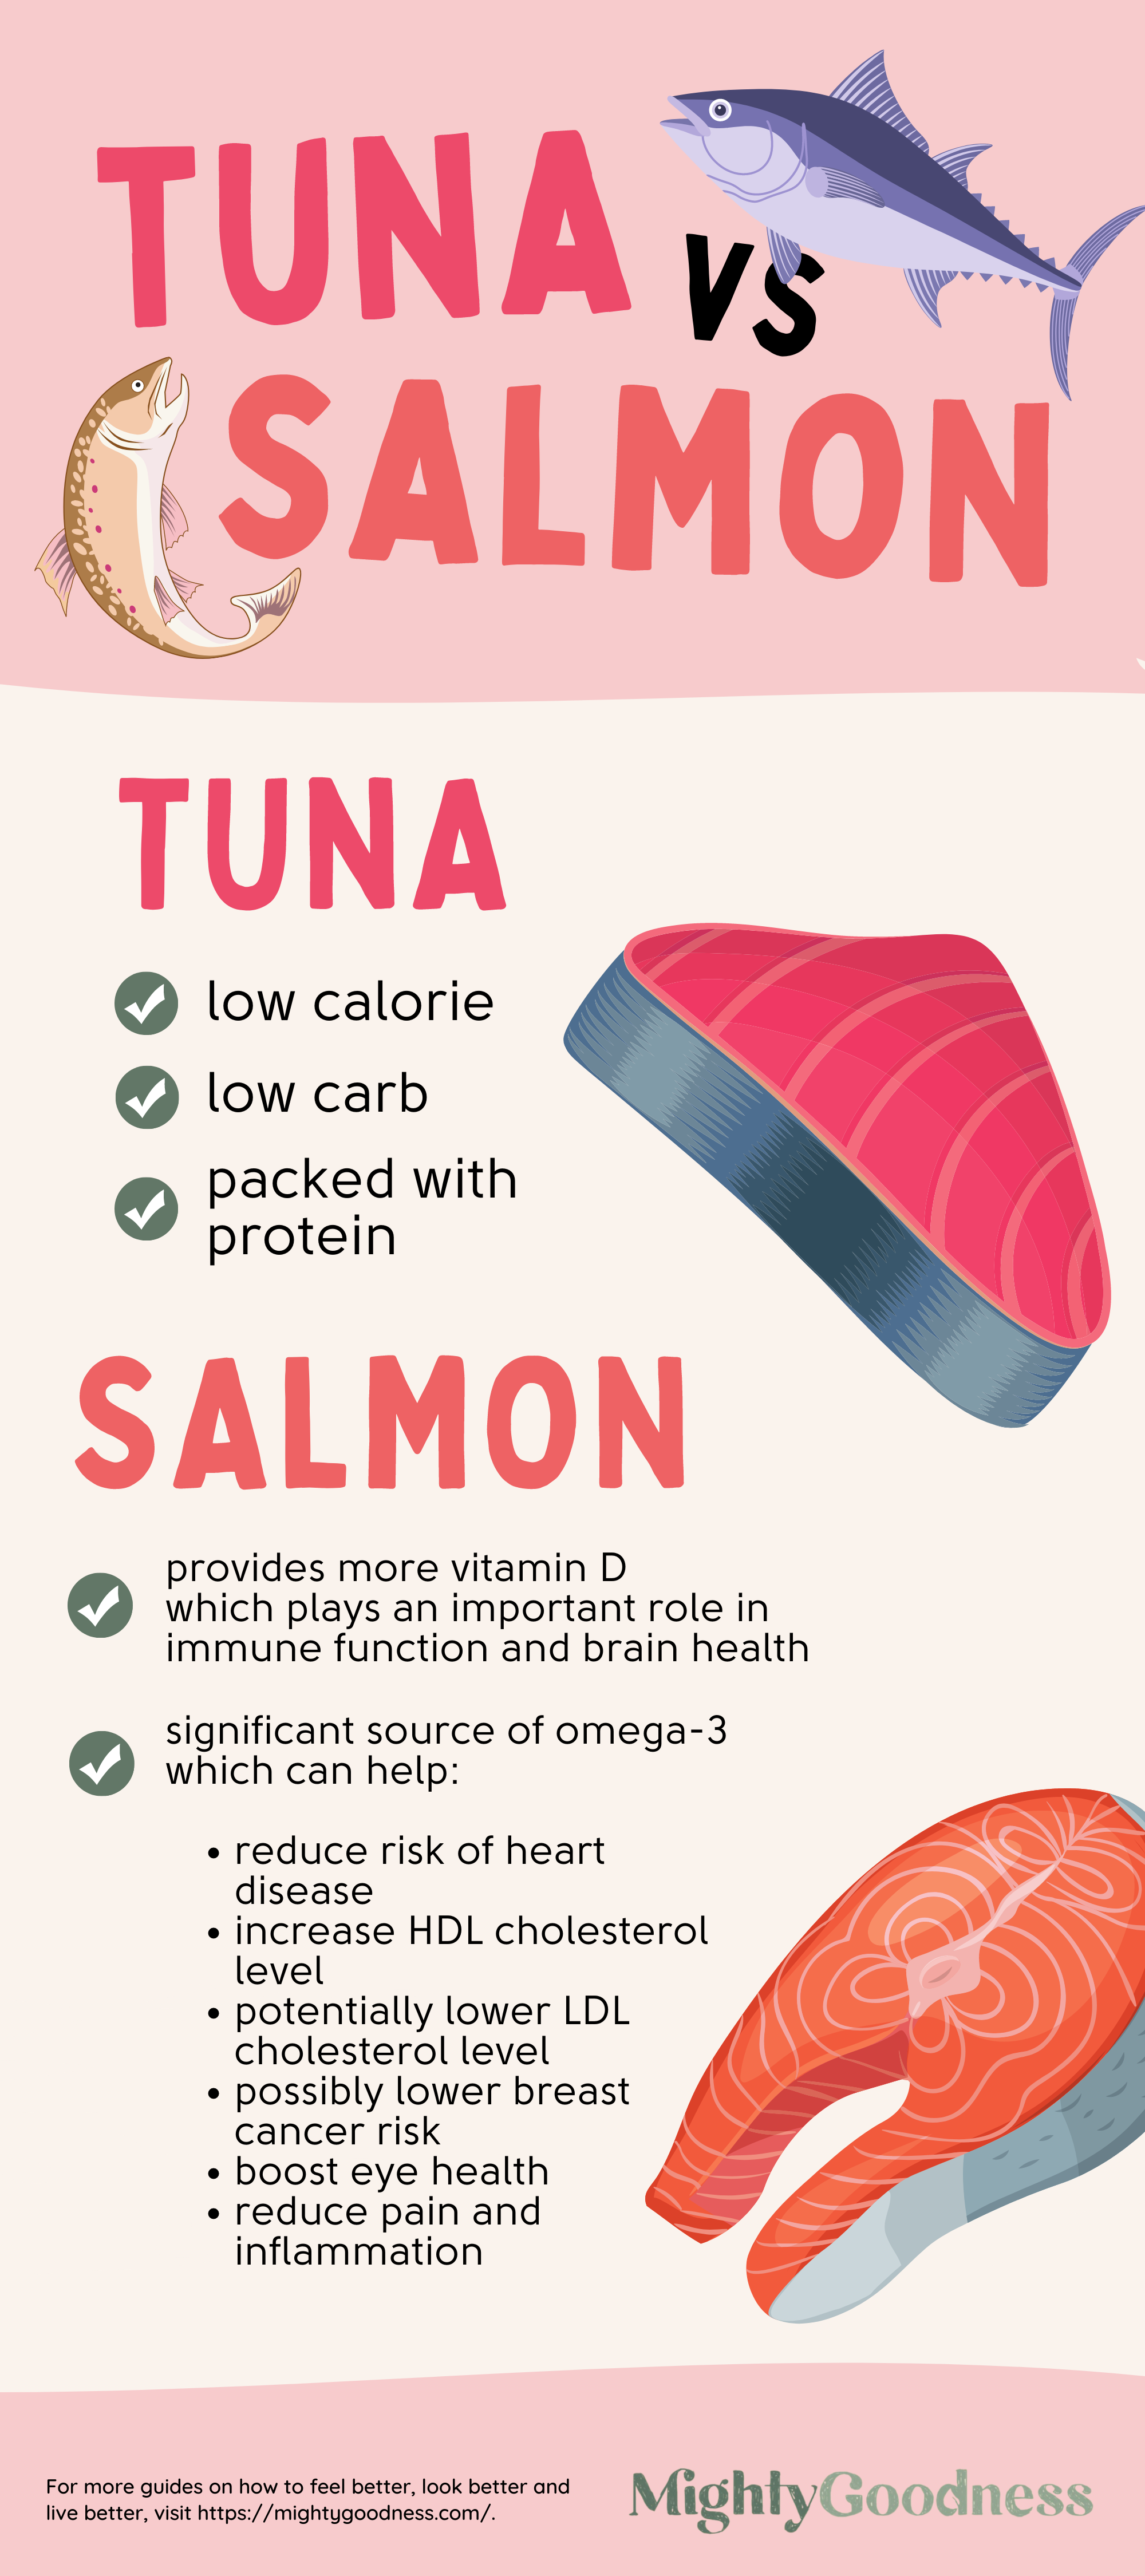 Tuna vs Salmon